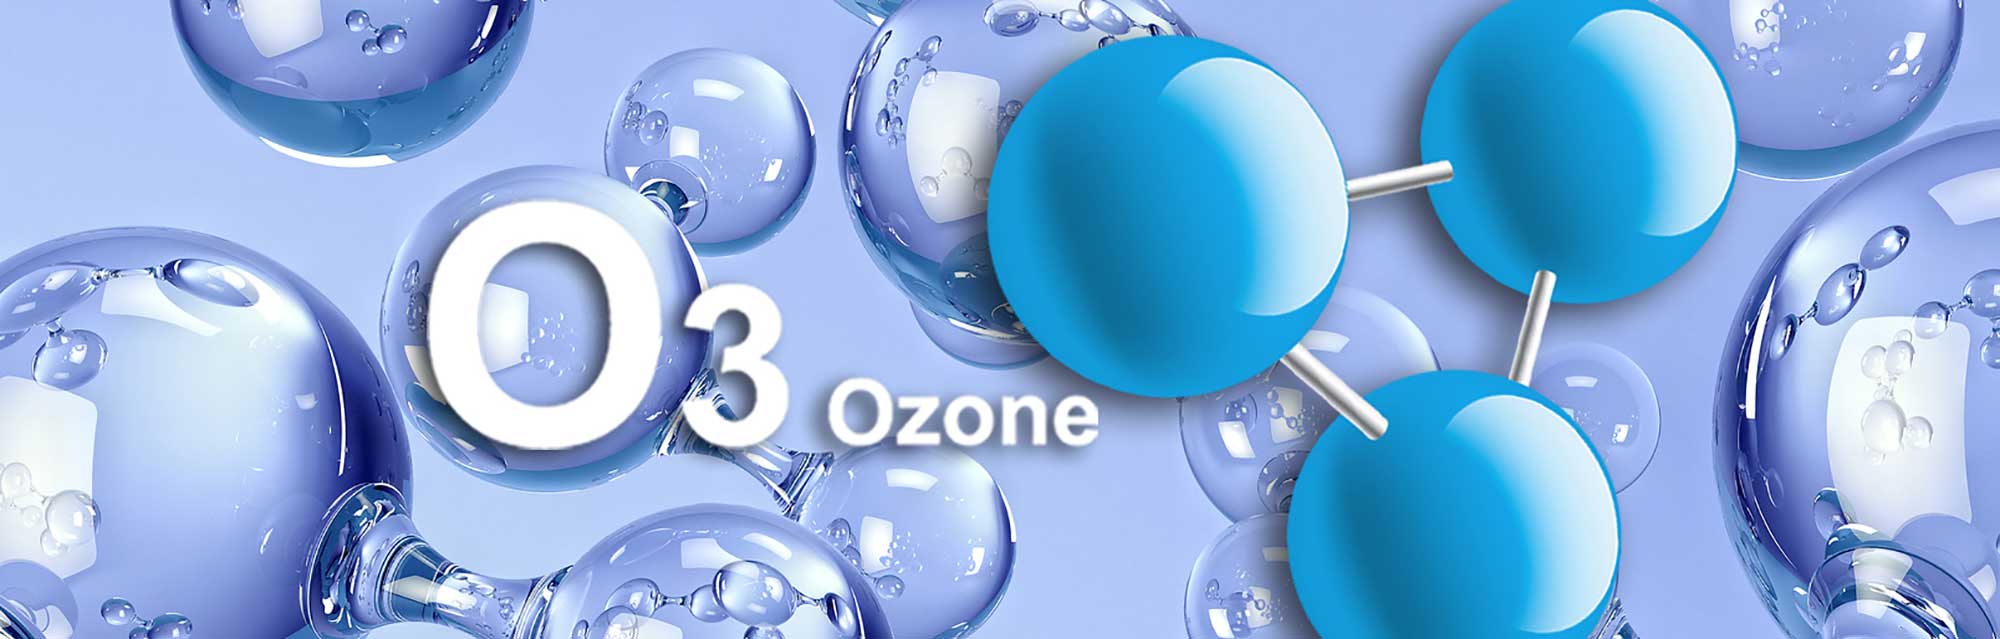 Ozon Tedavisi